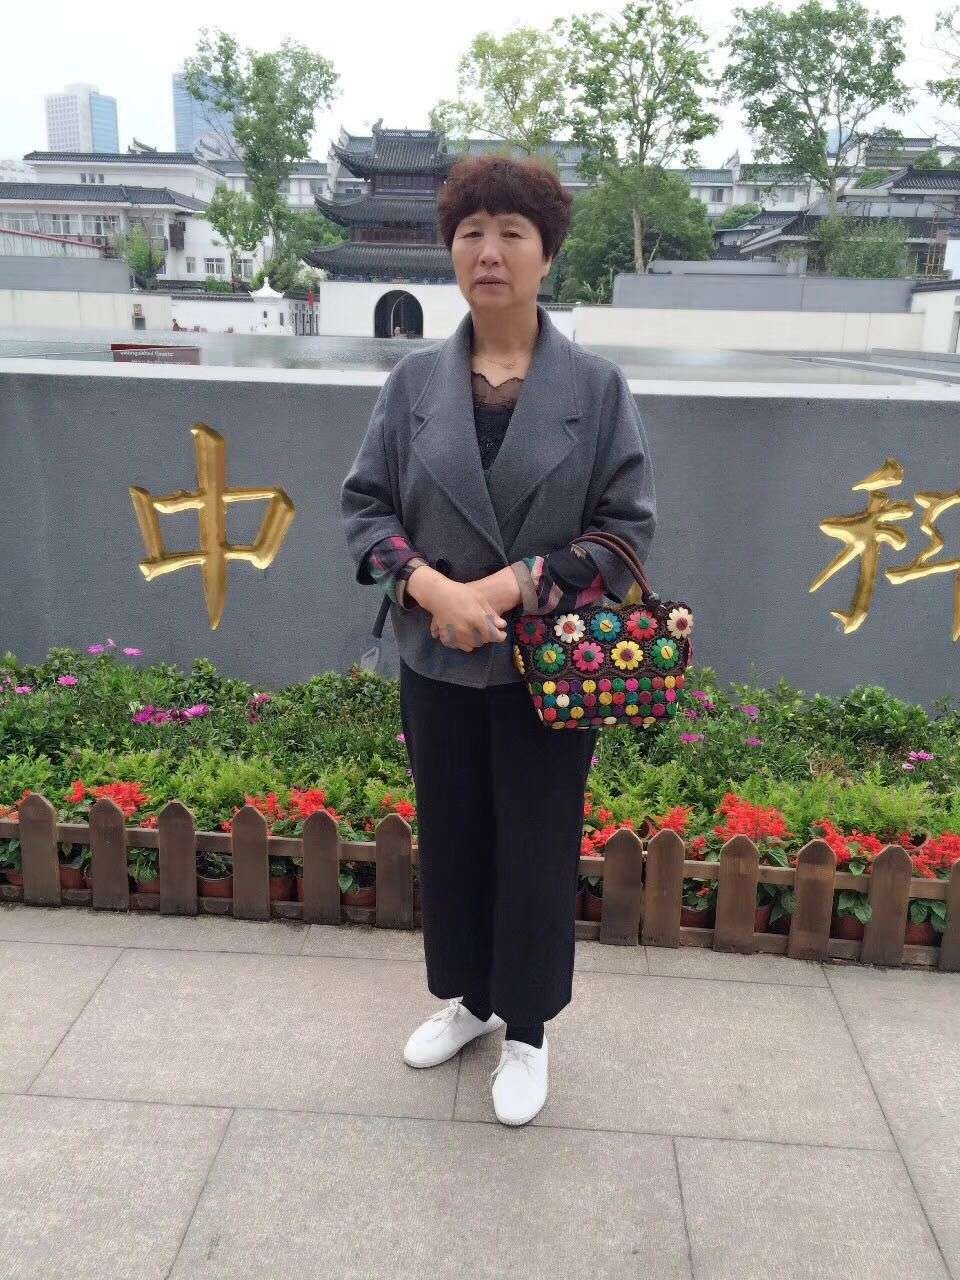 【已找到】一位55岁李女士于10月3日在城东世茂广场出走,望知情者告知